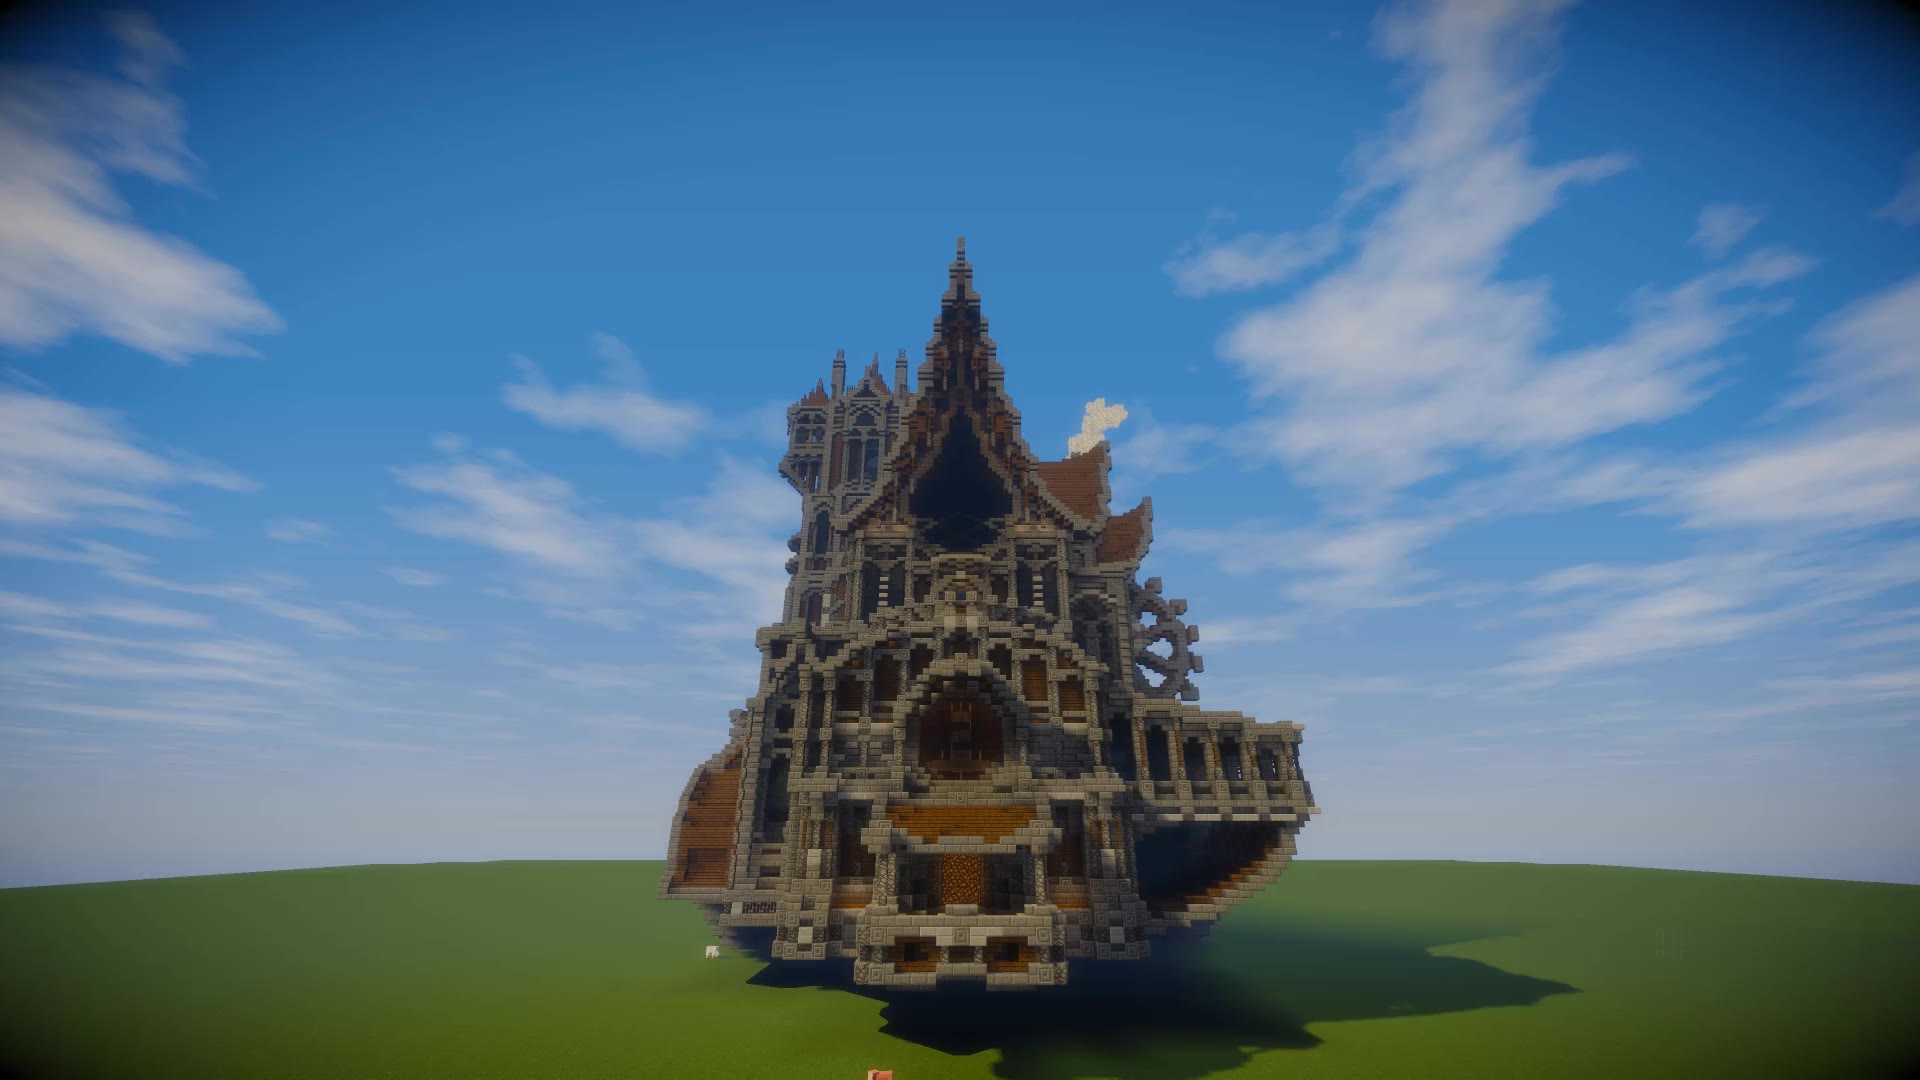 移动城堡 Minecraft单人小型建筑 哔哩哔哩 Bilibili